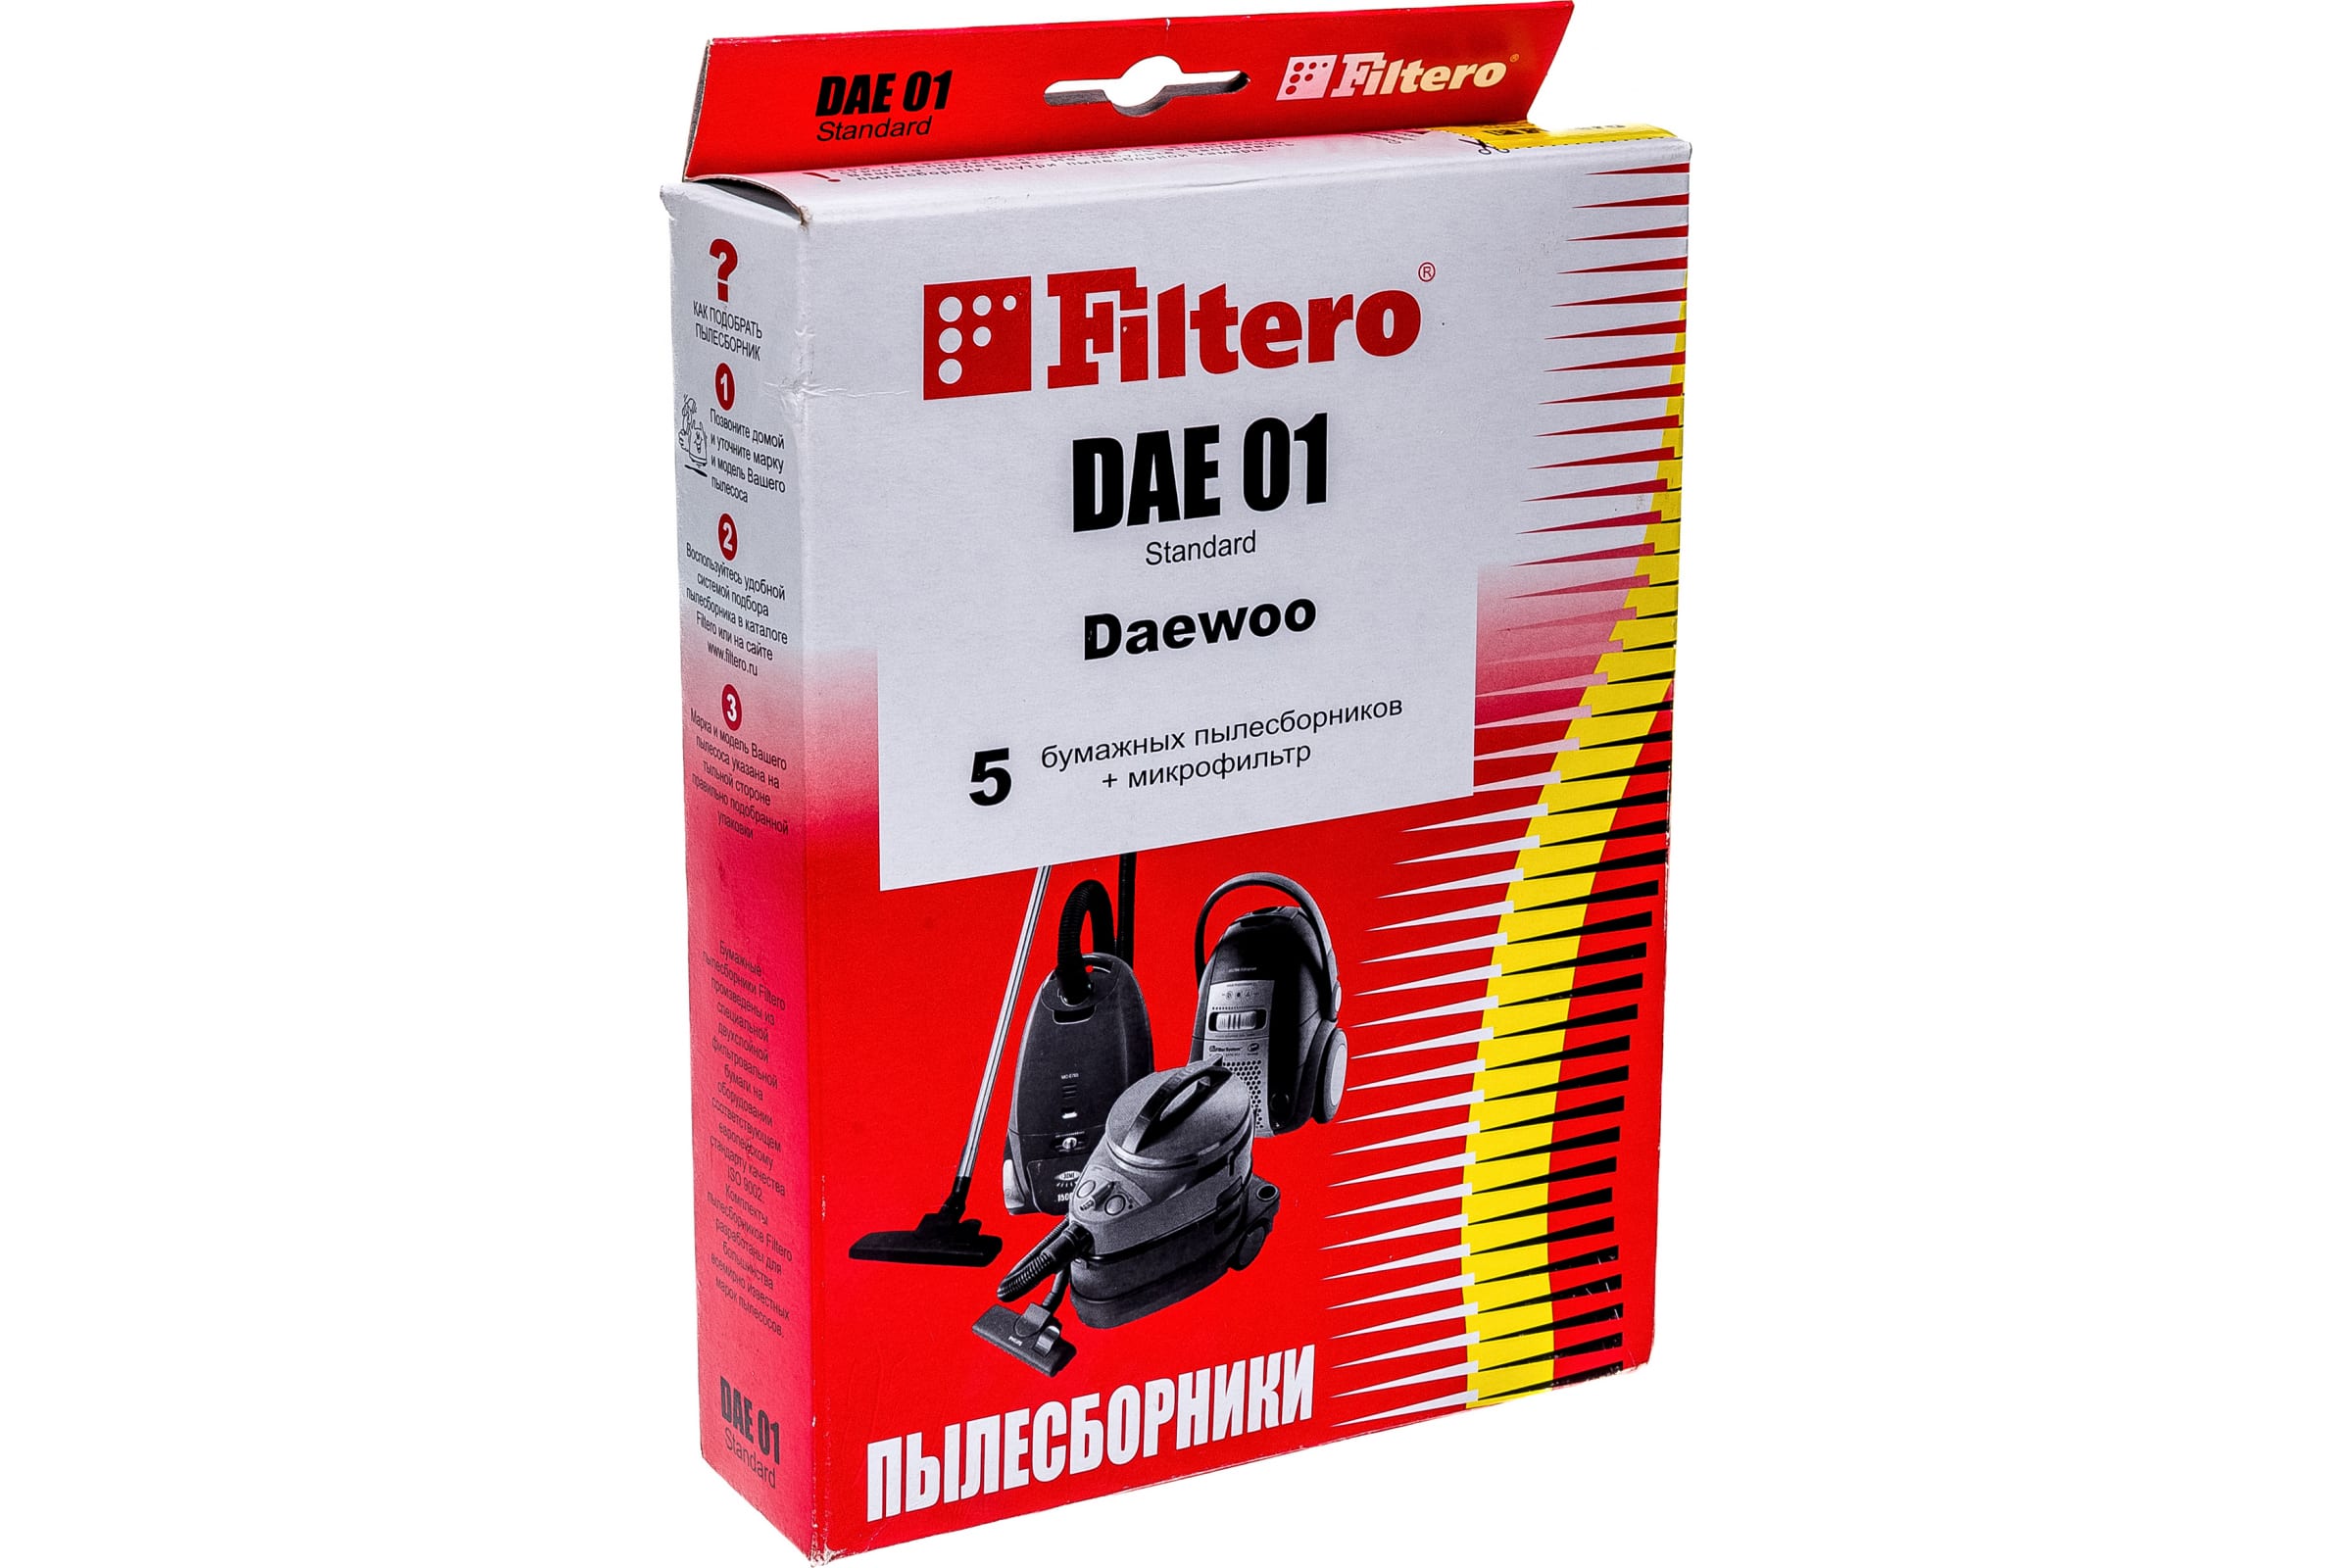 Пылесборник Filtero DAE 01(5+ф) Standard